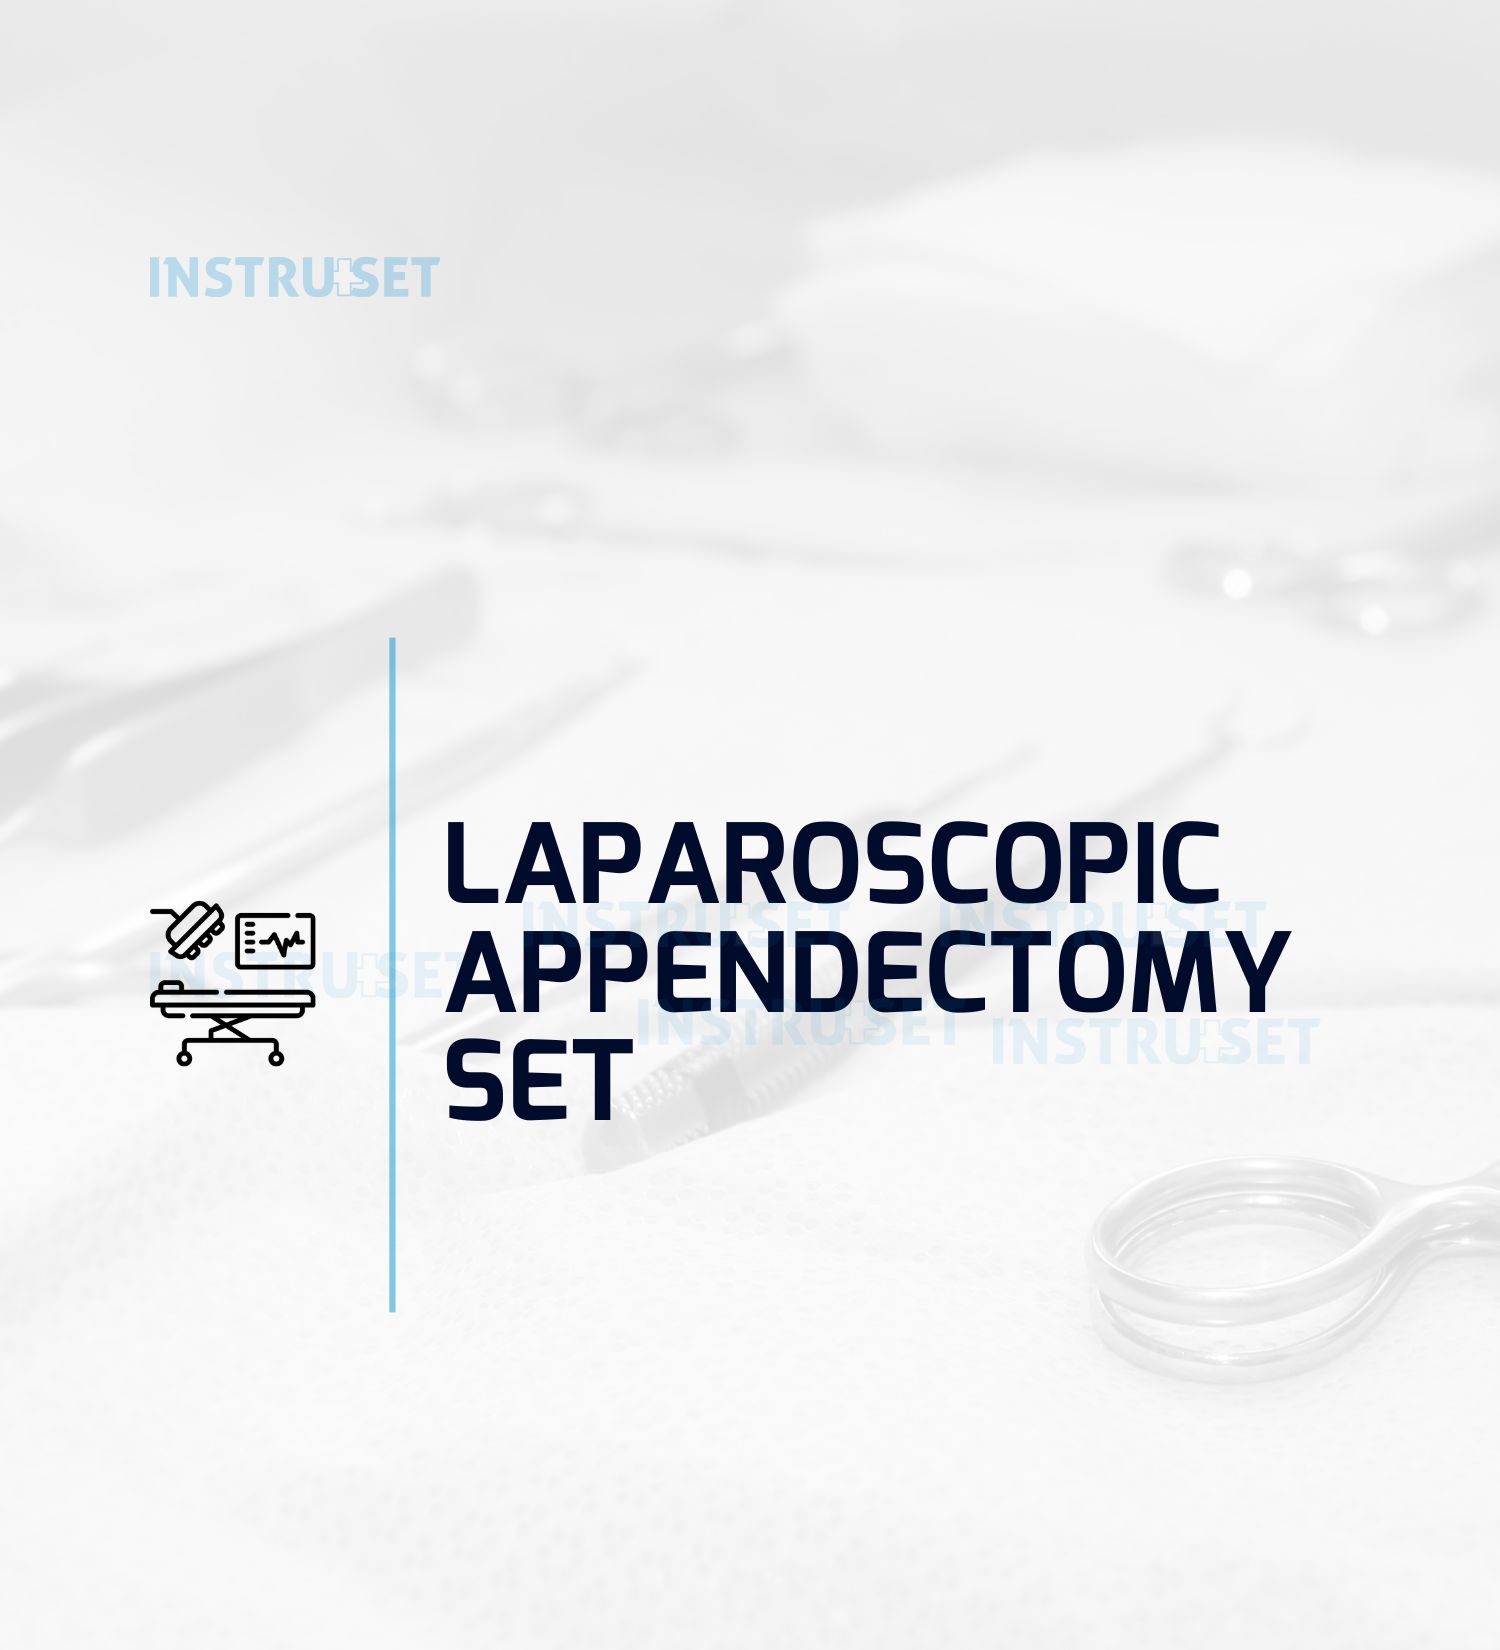 Laparoscopic Appendectomy Set - Instruset